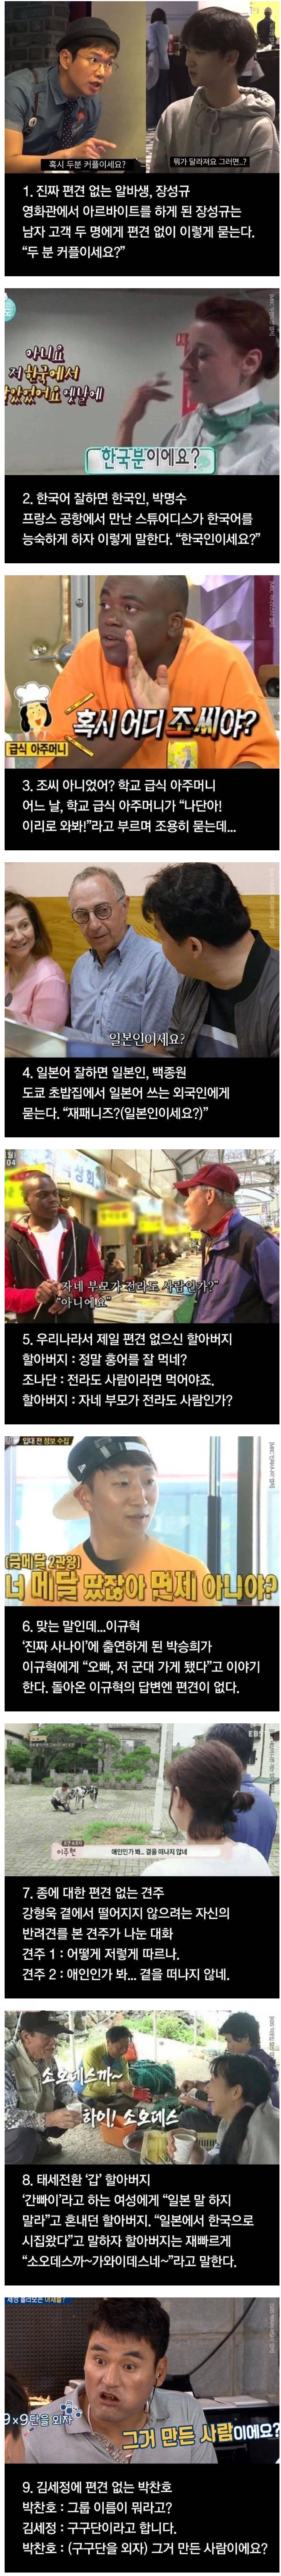  대한민국에서 가장 편견 없는 사람들